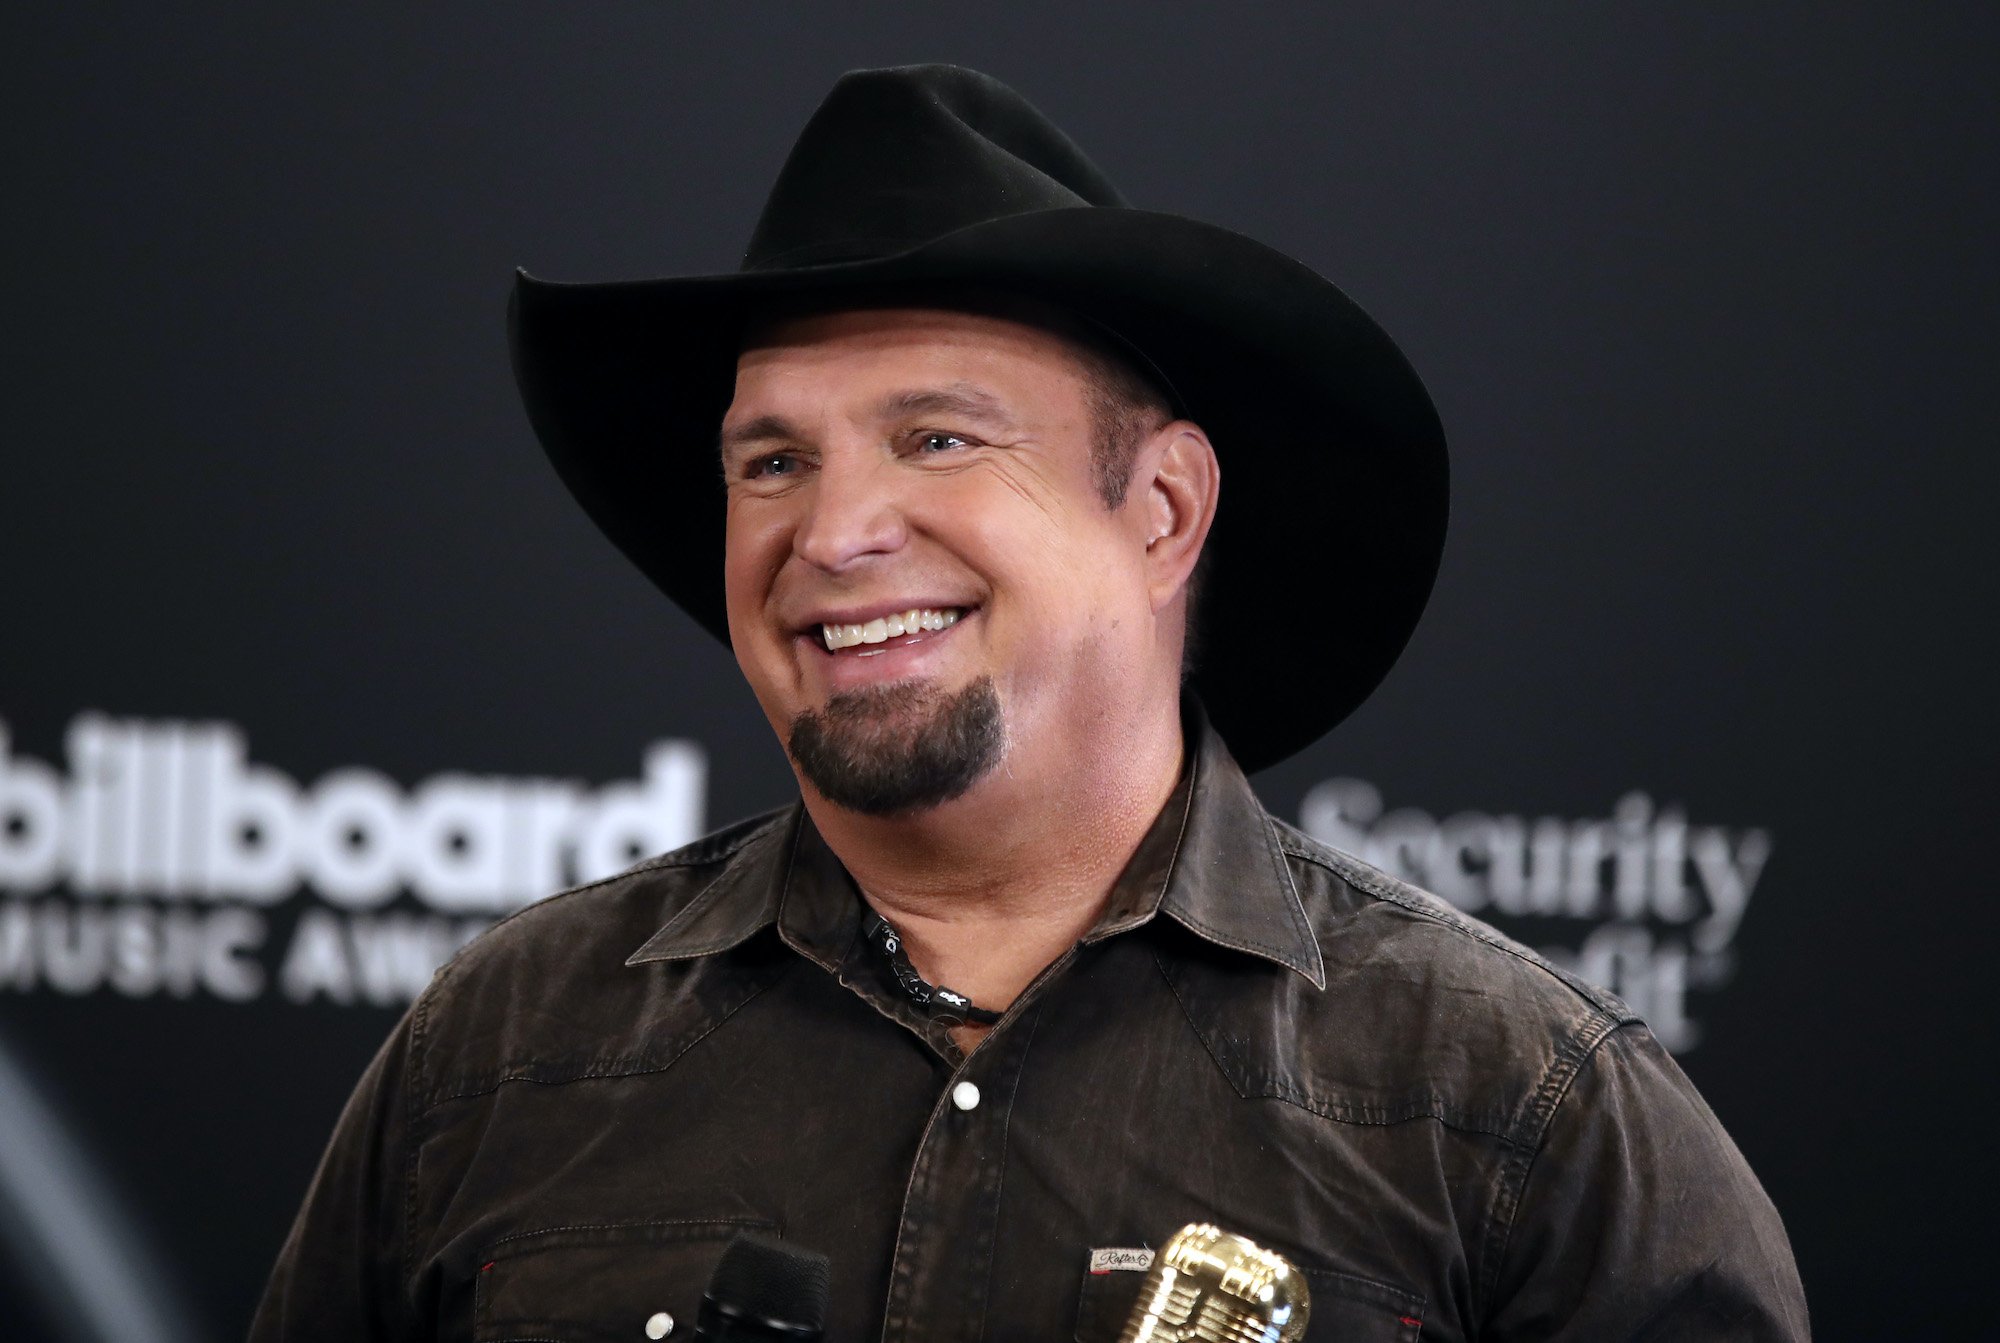 Garth Brooks smiling, wearing a cowboy hat